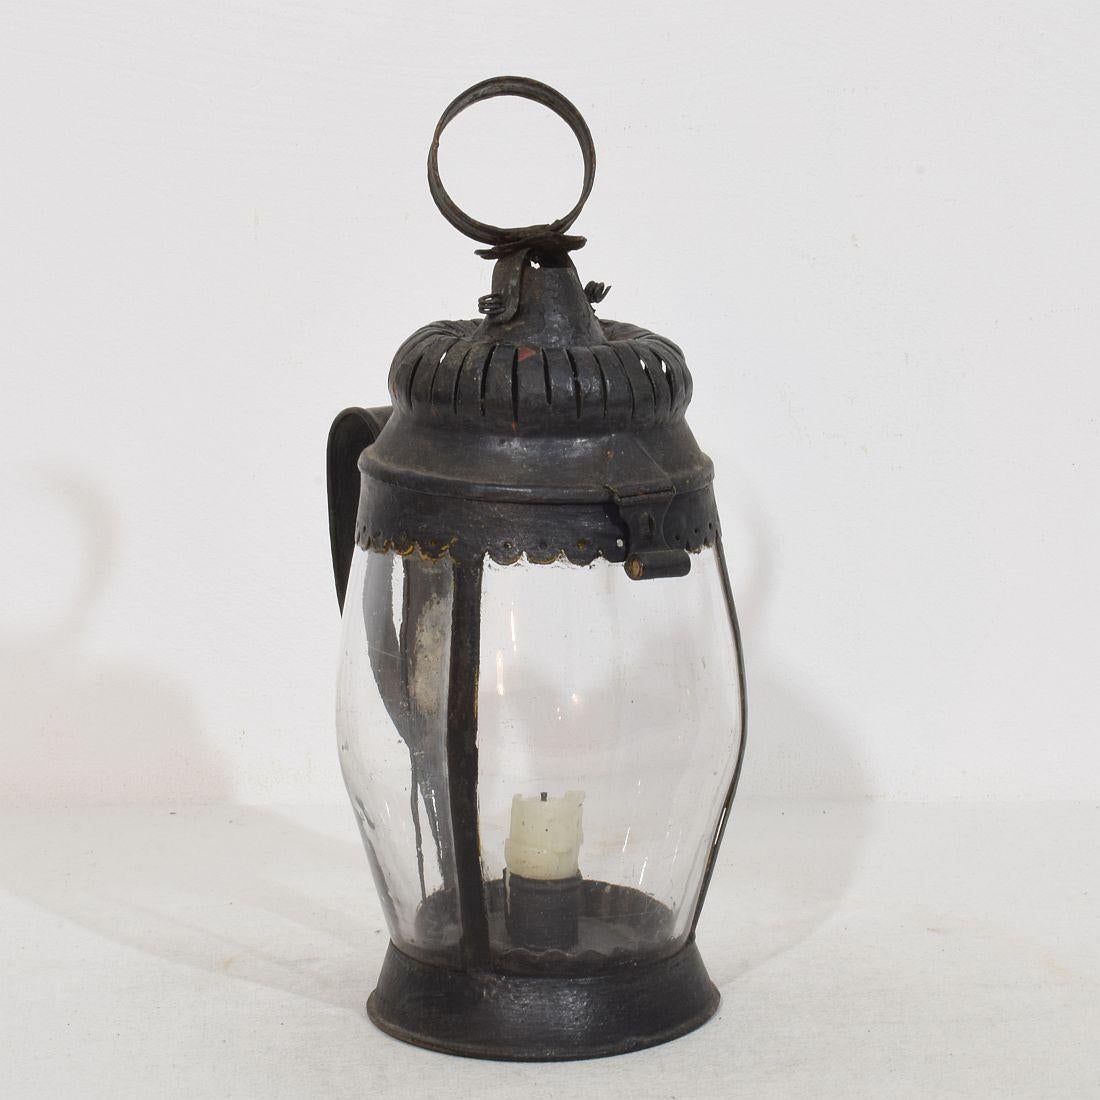 Très rare et précoce lanterne en métal/verre, France, vers 1750-1800.
Merveilleuse pièce d'époque. Usures et petites réparations datant d'environ 1900.
H:28cm  L:12,5cm P:15,5cm 